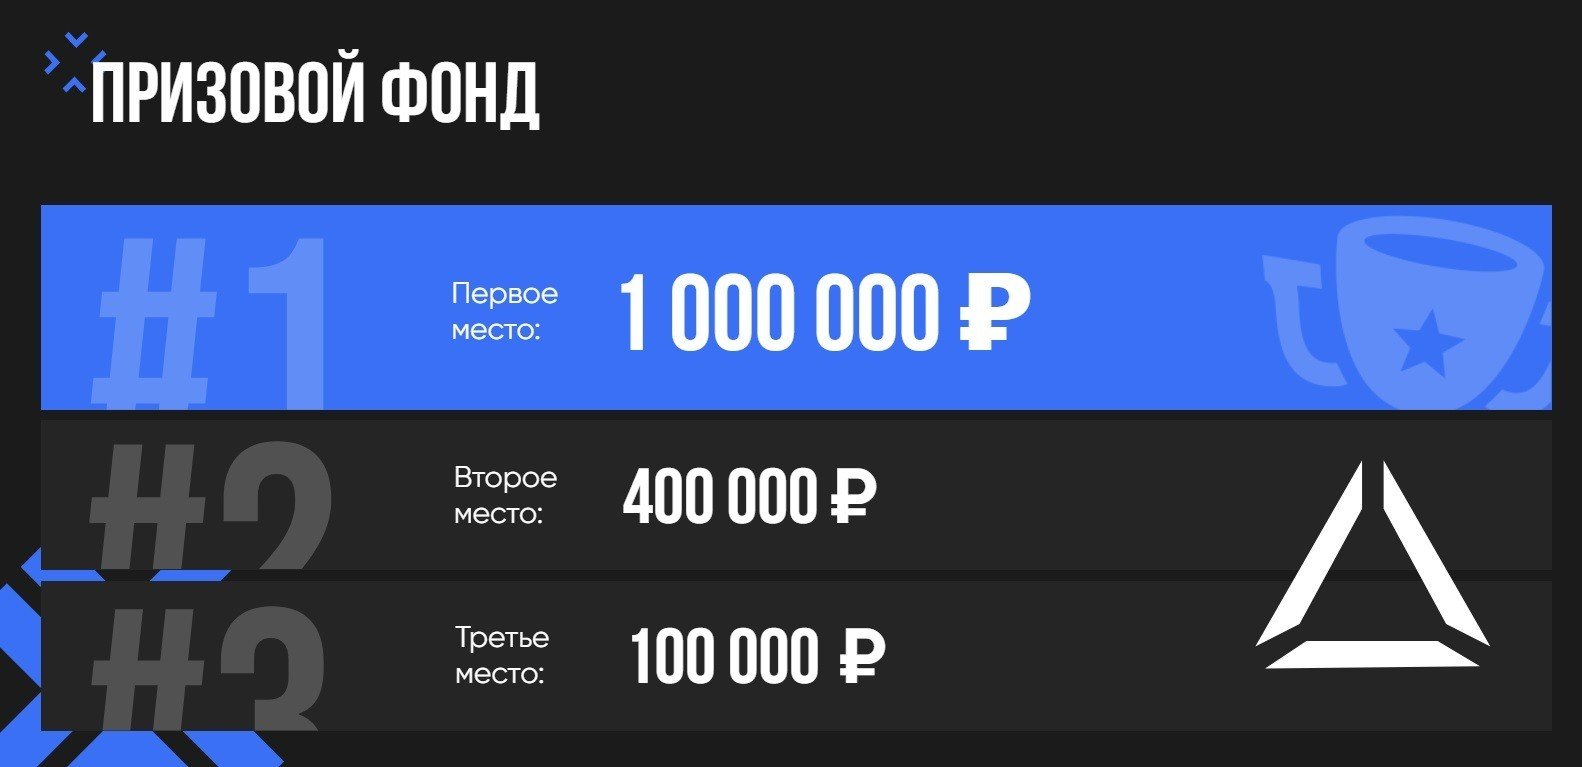 Со 2 по 3 декабря в Москве на VRтурнире от WARPOINT разыграют 15 млн рублей